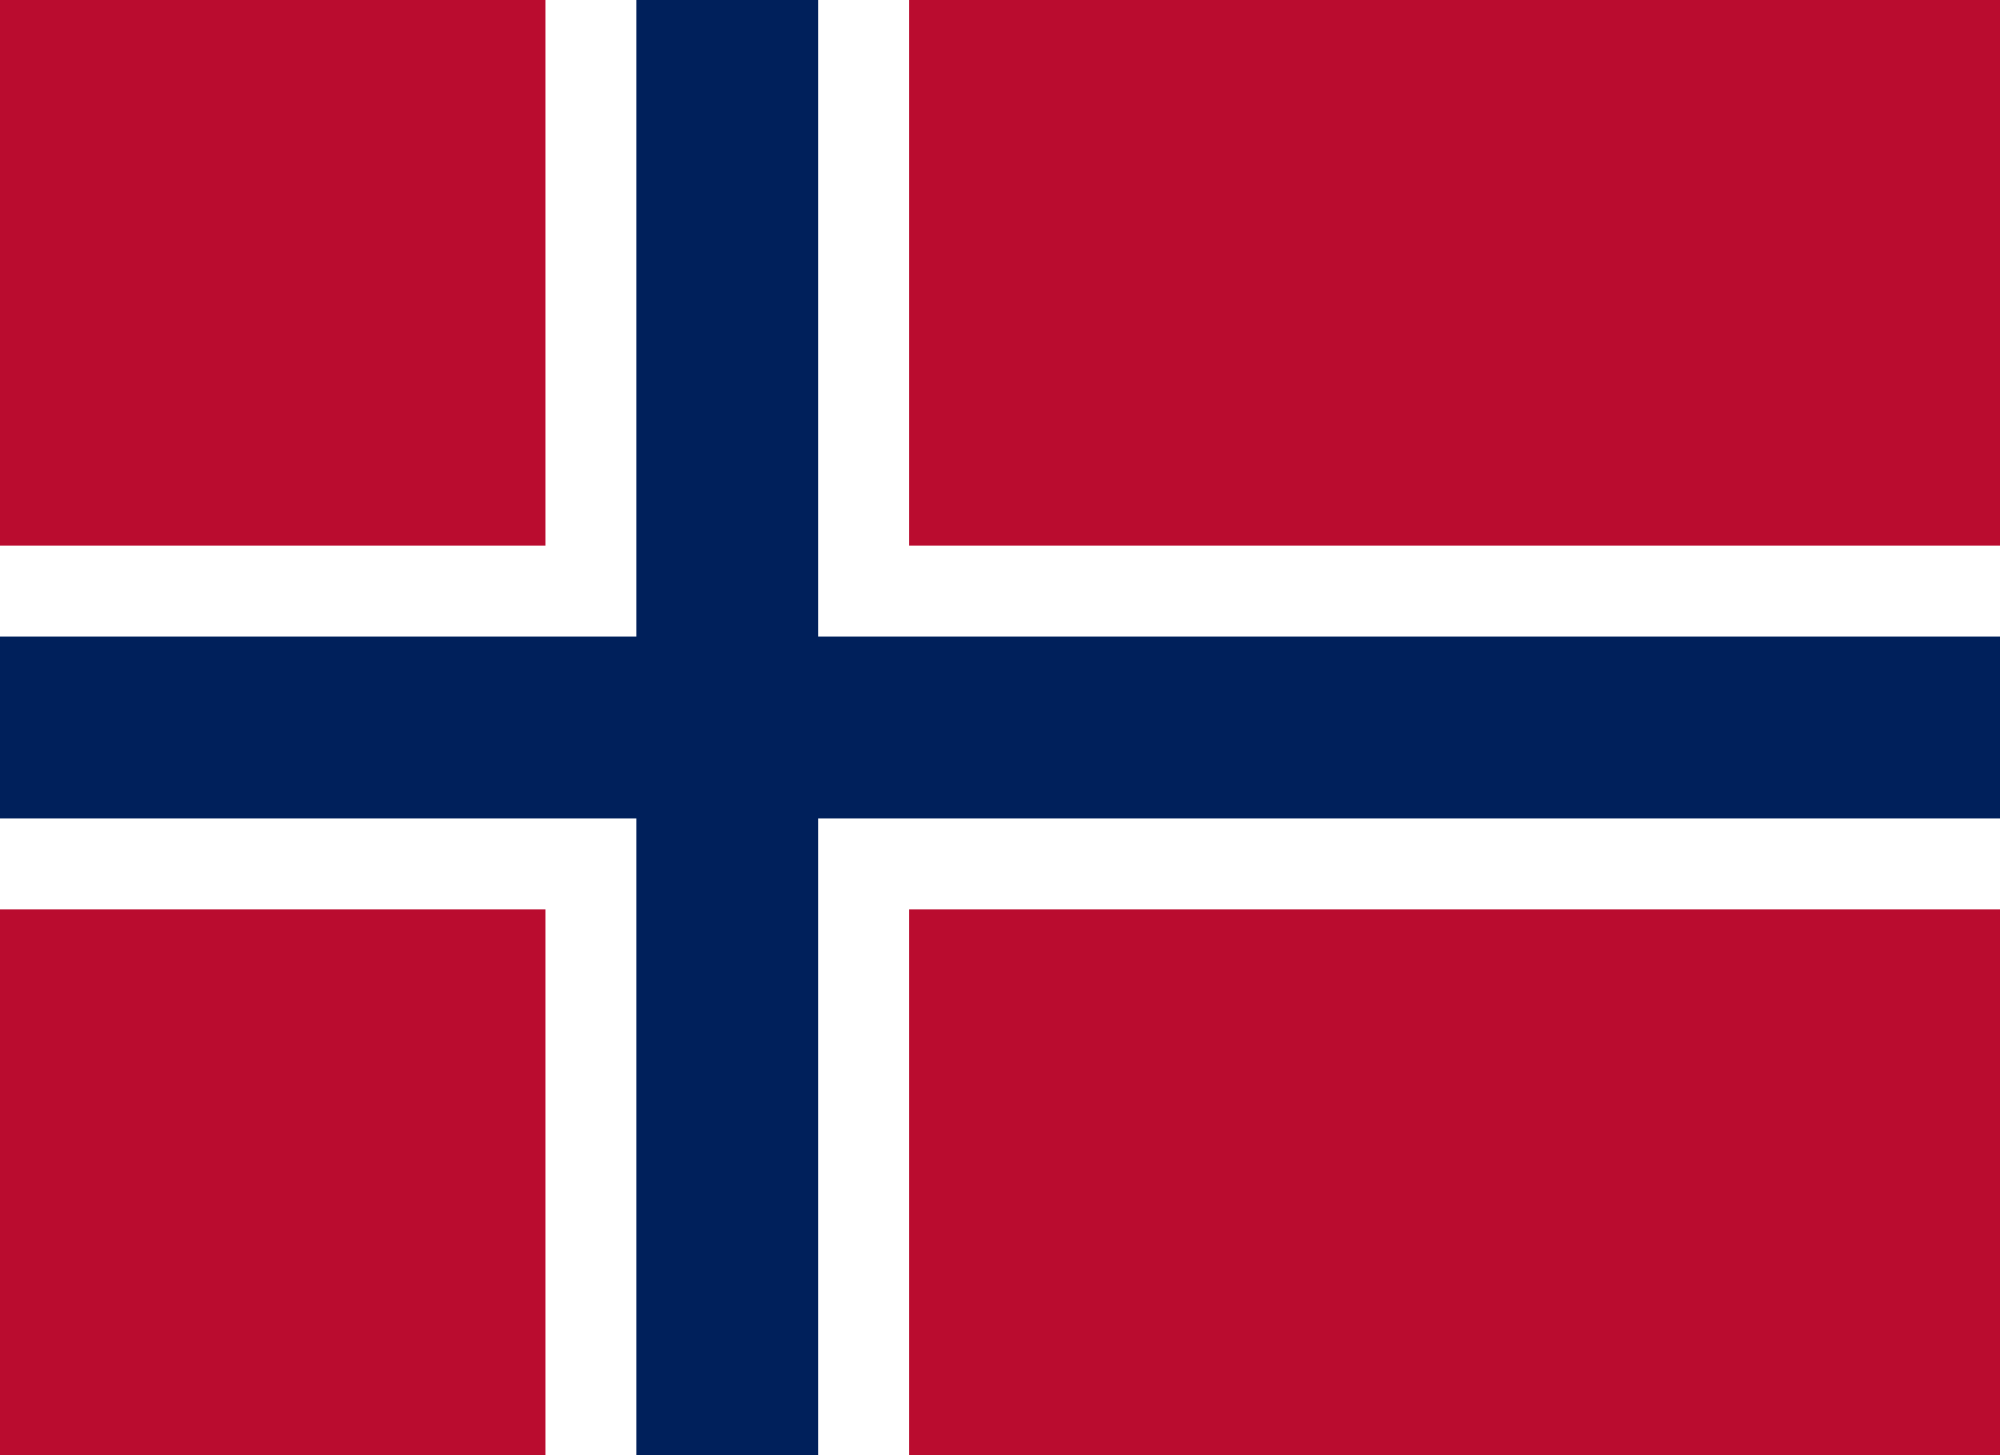 Aula Norway